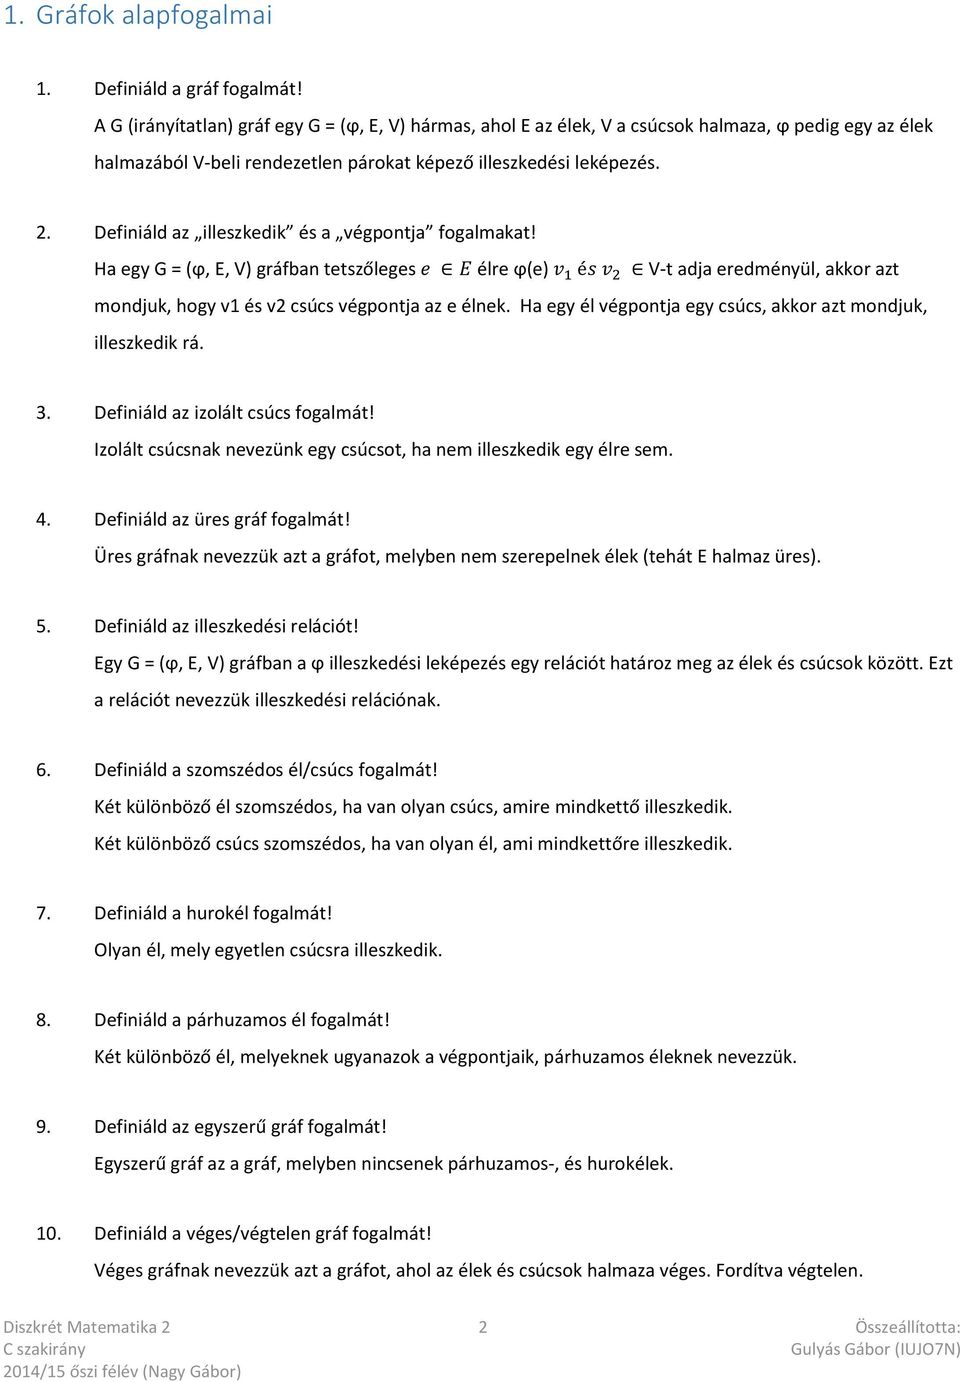 Diszkrét Matematika 2 (C) - PDF Ingyenes letöltés